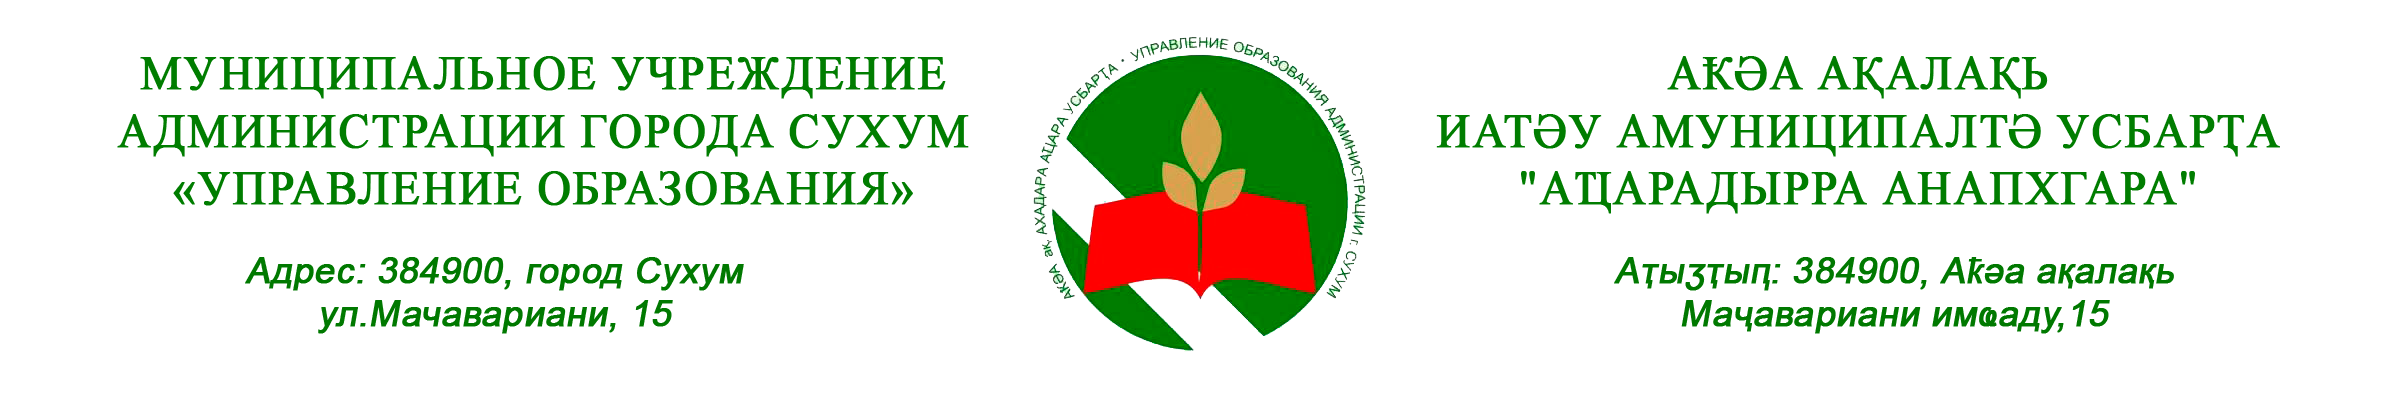 Управление образованием администрации города Сухум